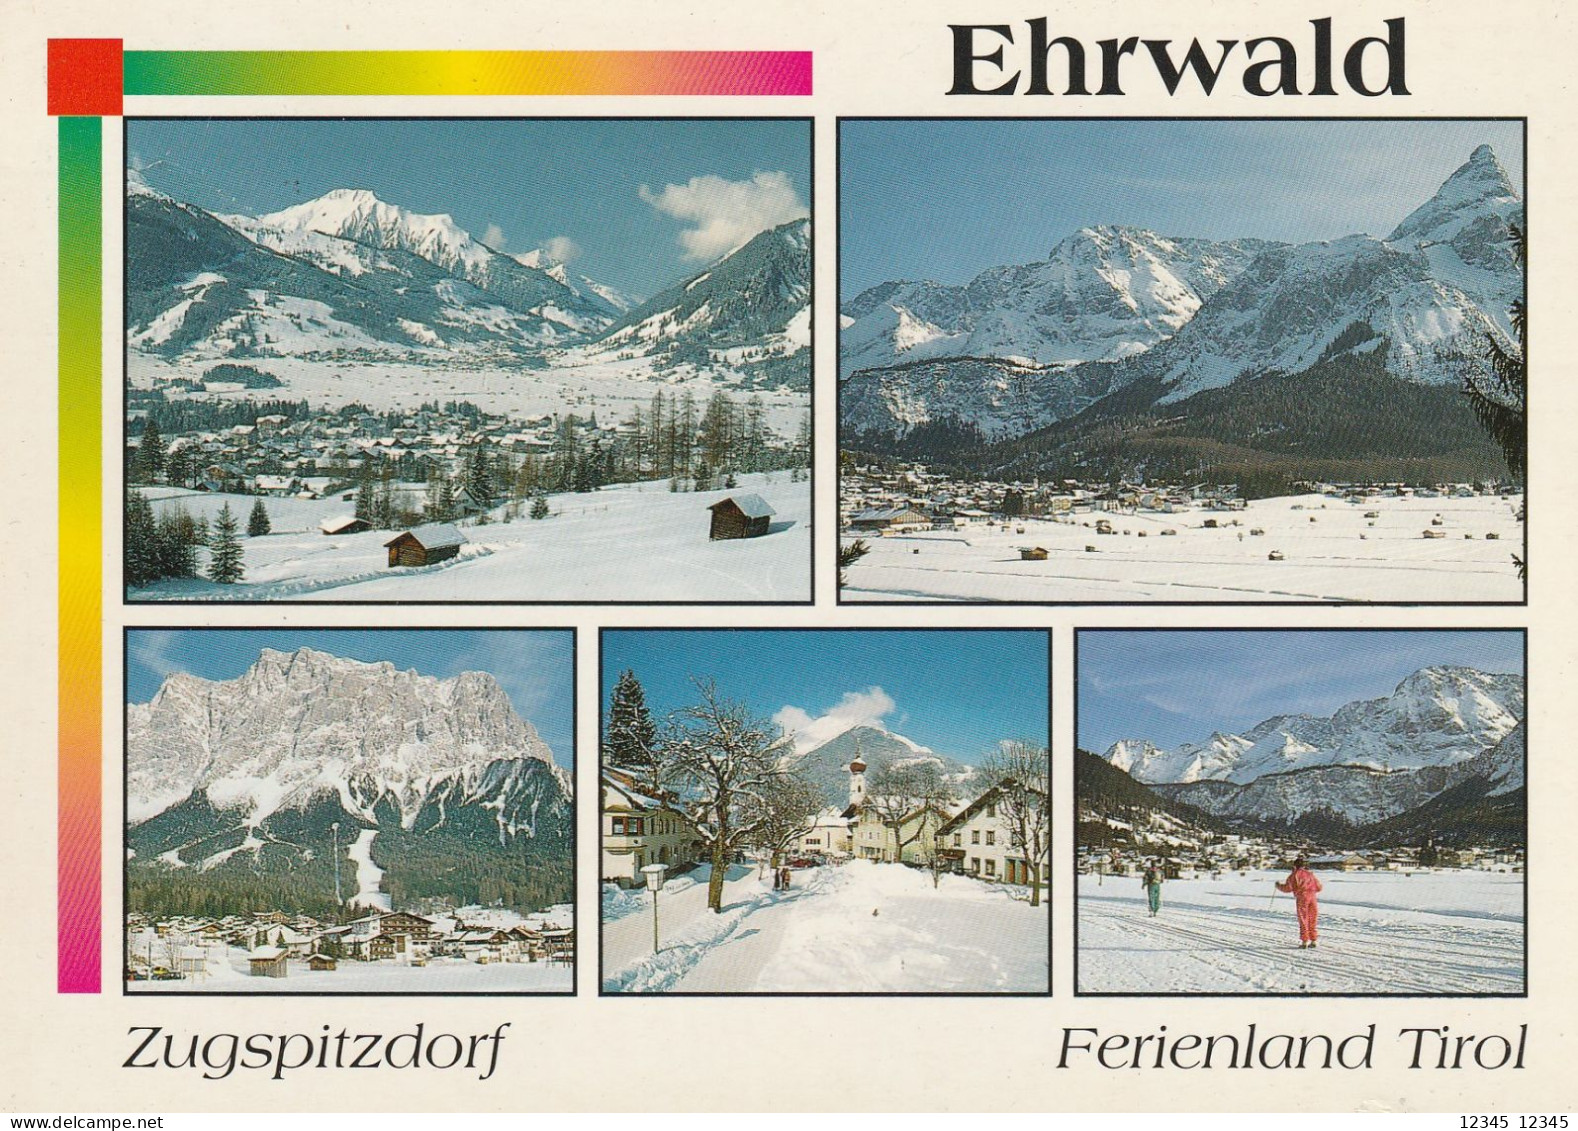 Ehrwald, Zugspitzdorf - Ehrwald